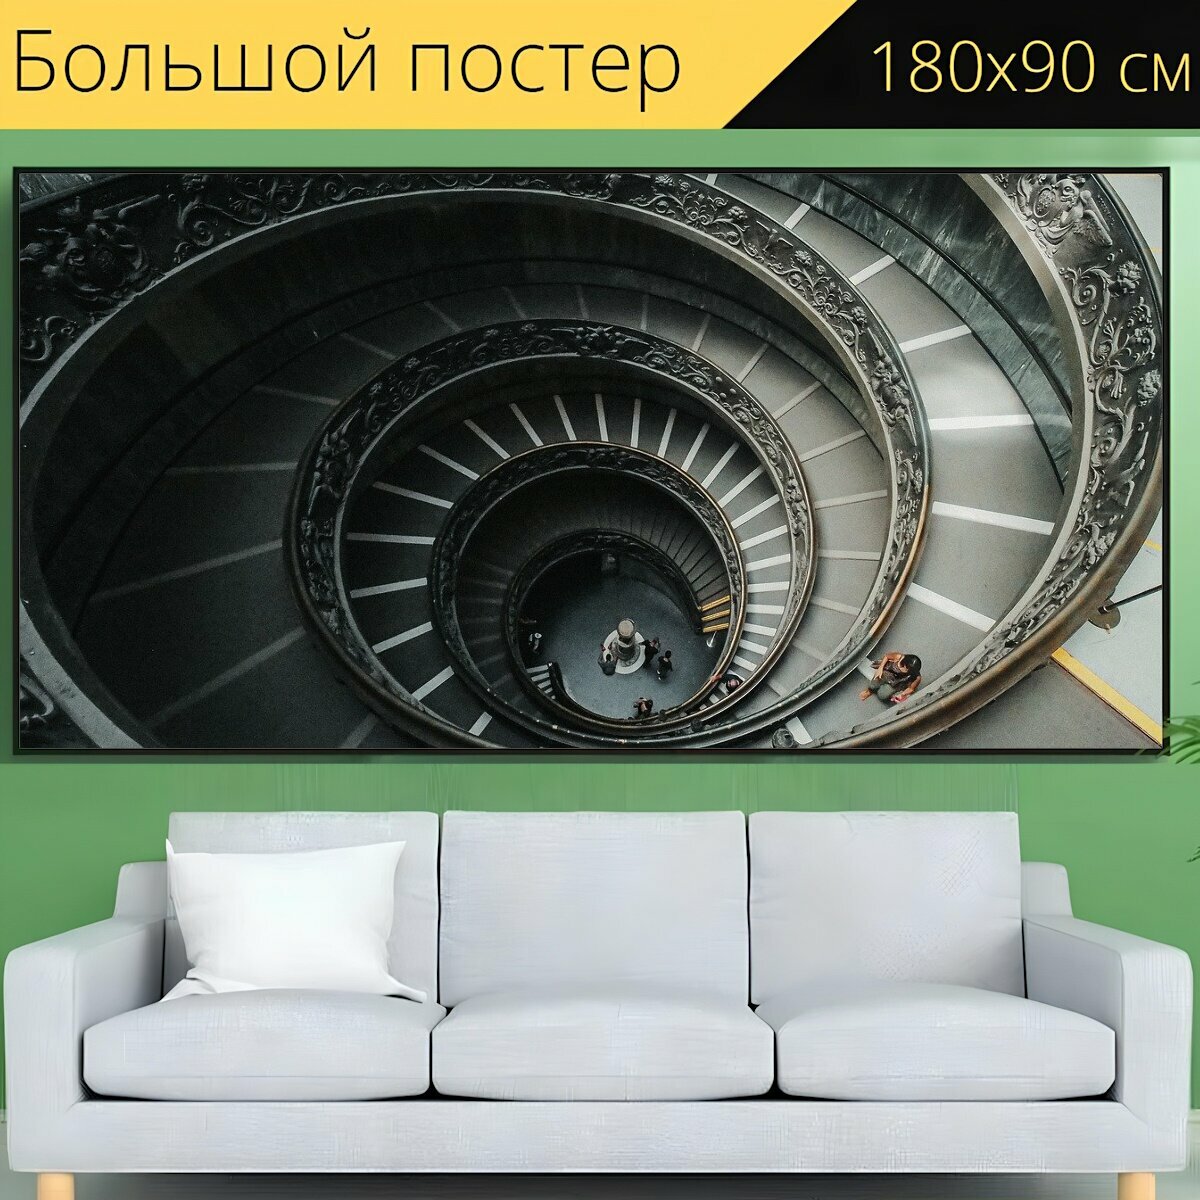 Большой постер "Лестница лестницы винтовые архитектуры" 180 x 90 см. для интерьера